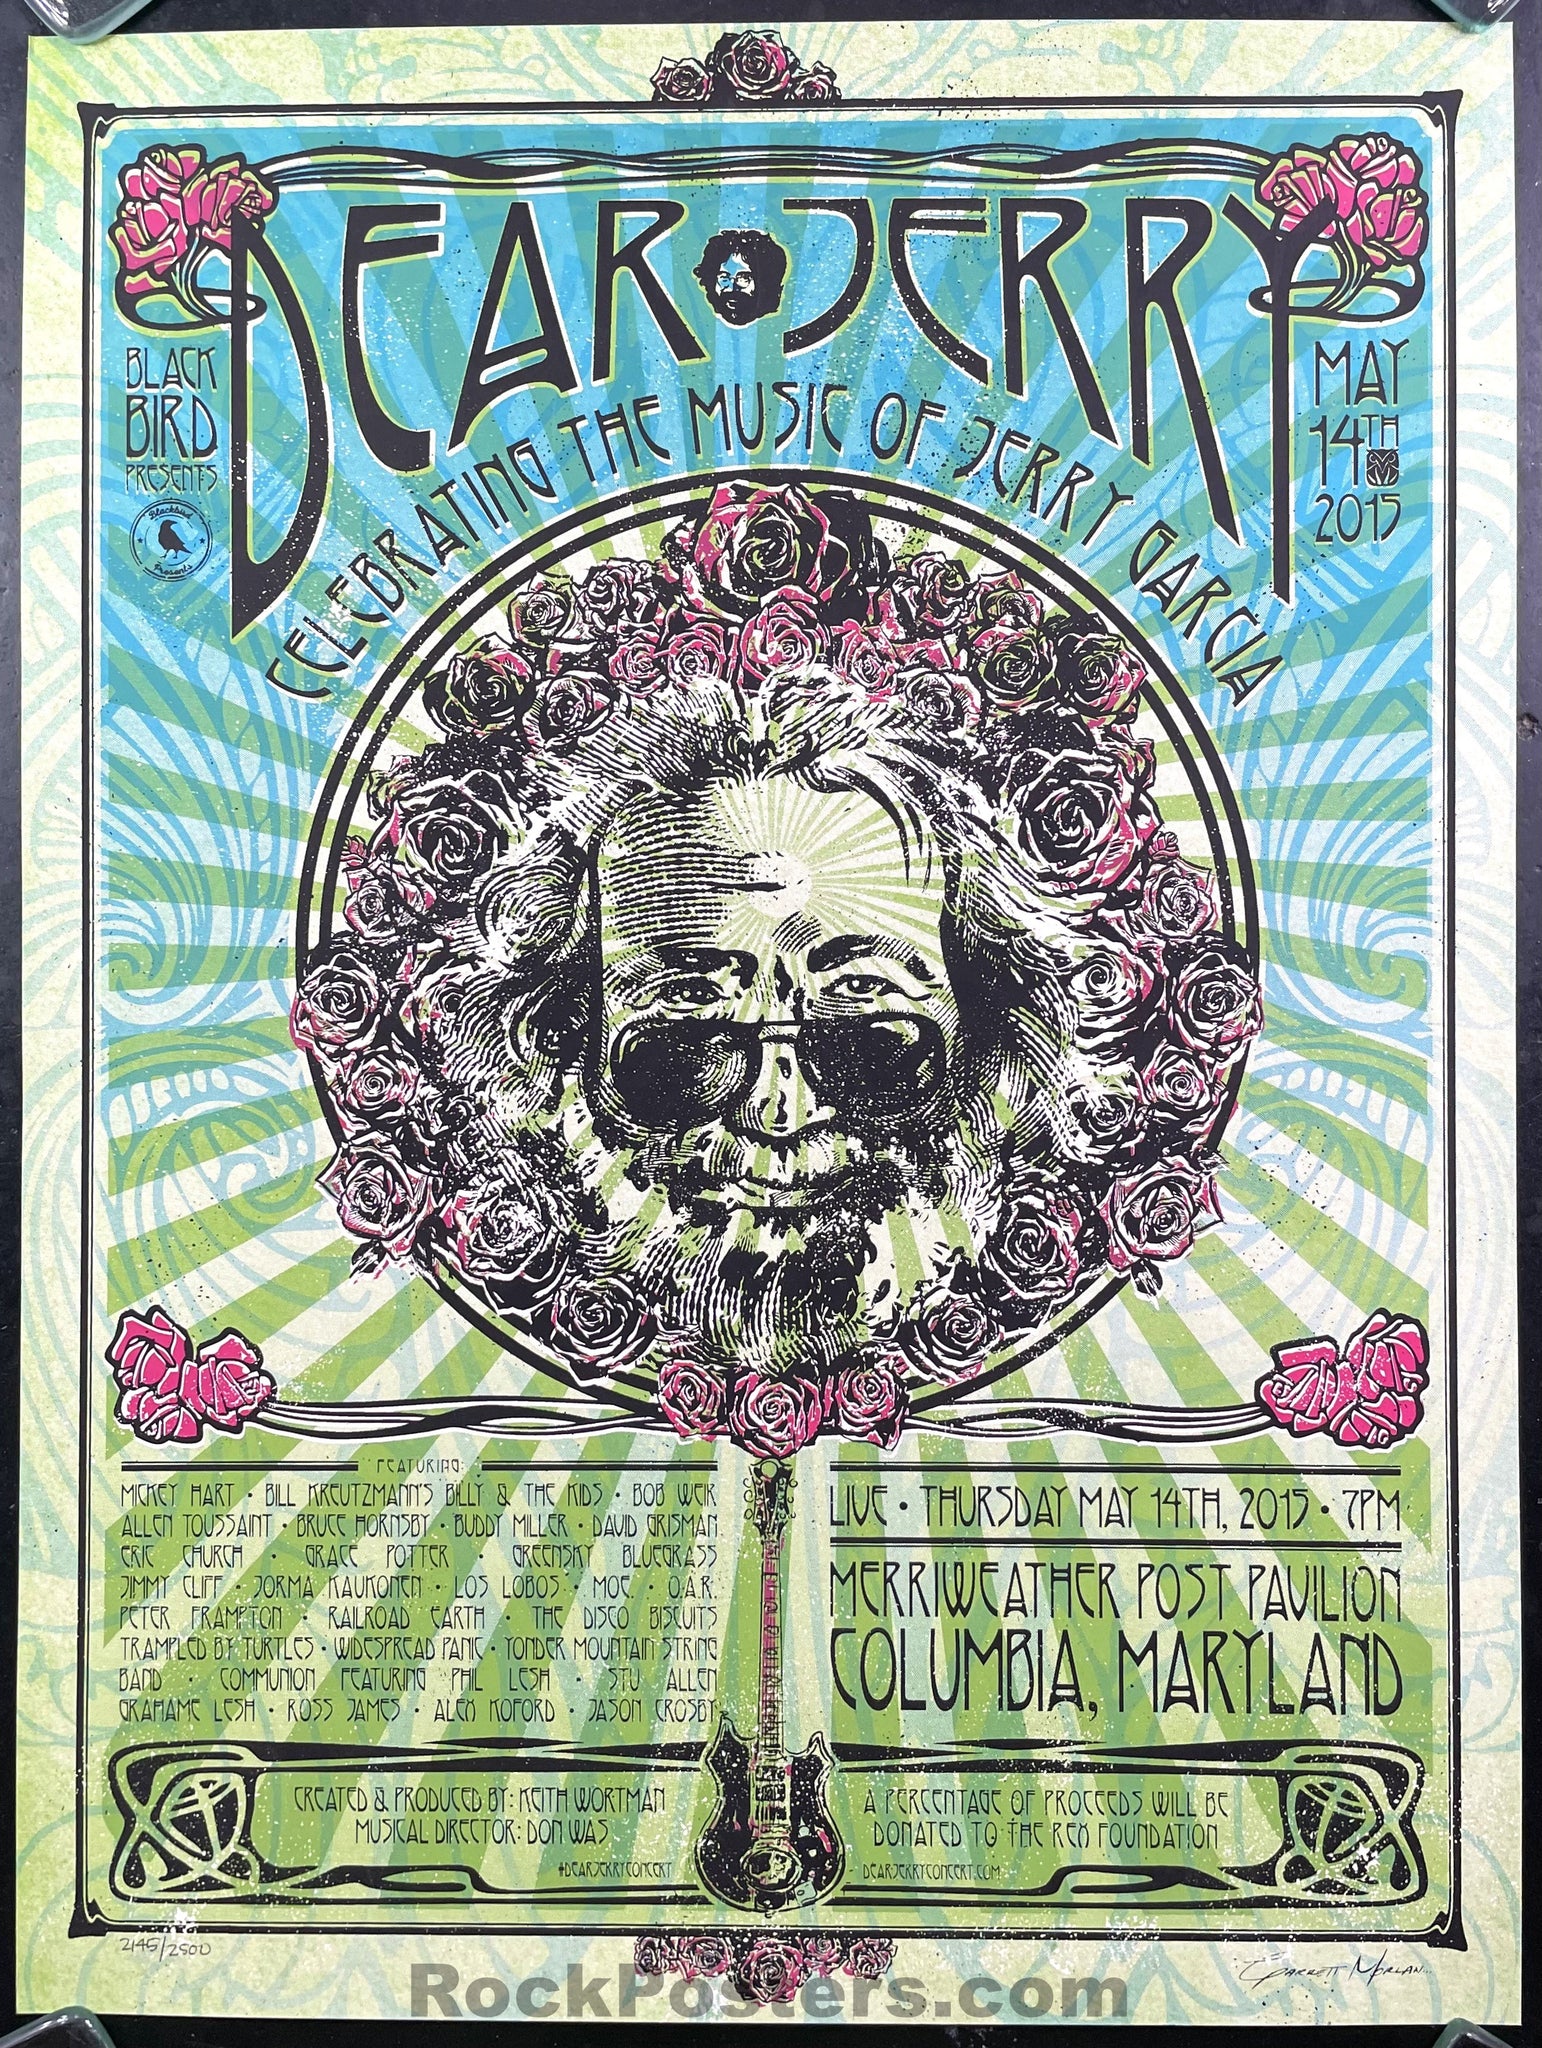 AUCTION - Jerry Garcia - Grateful Dead - Garrett Morian Signed -  2015 Silkscreen Poster - Columbia, MD - Excellent